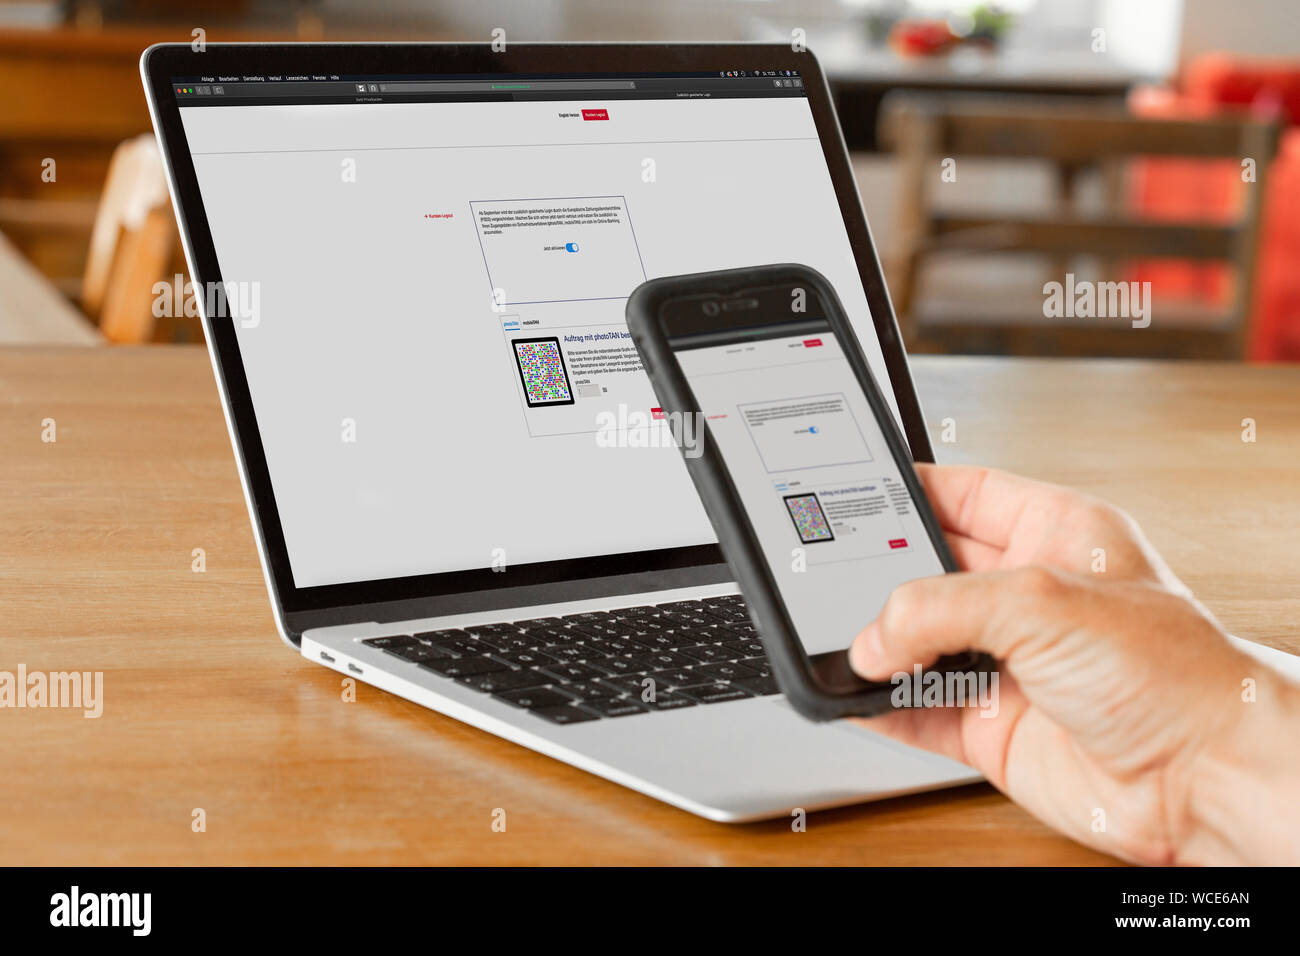 Captura de un smartphone con photoTAN durante la banca online, Alemania. Foto de stock